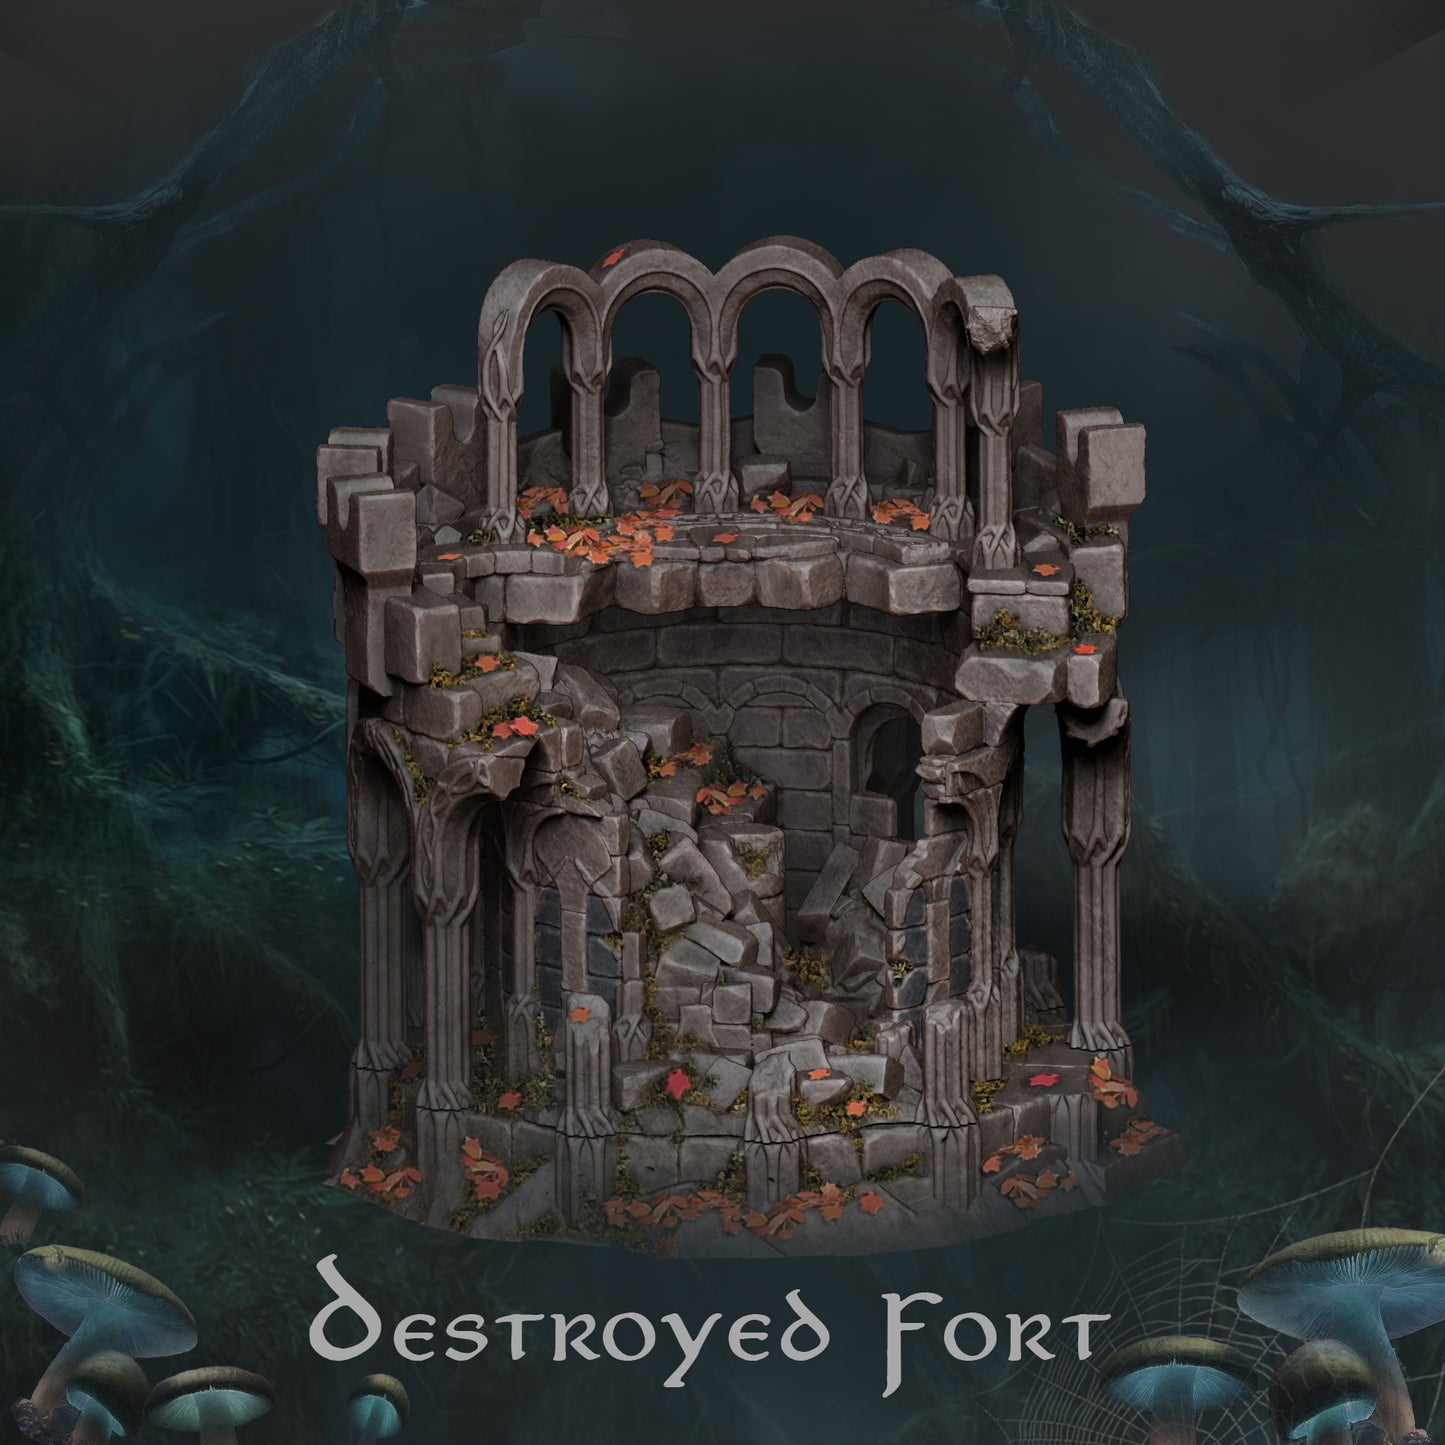 Elven Fort Destroyed